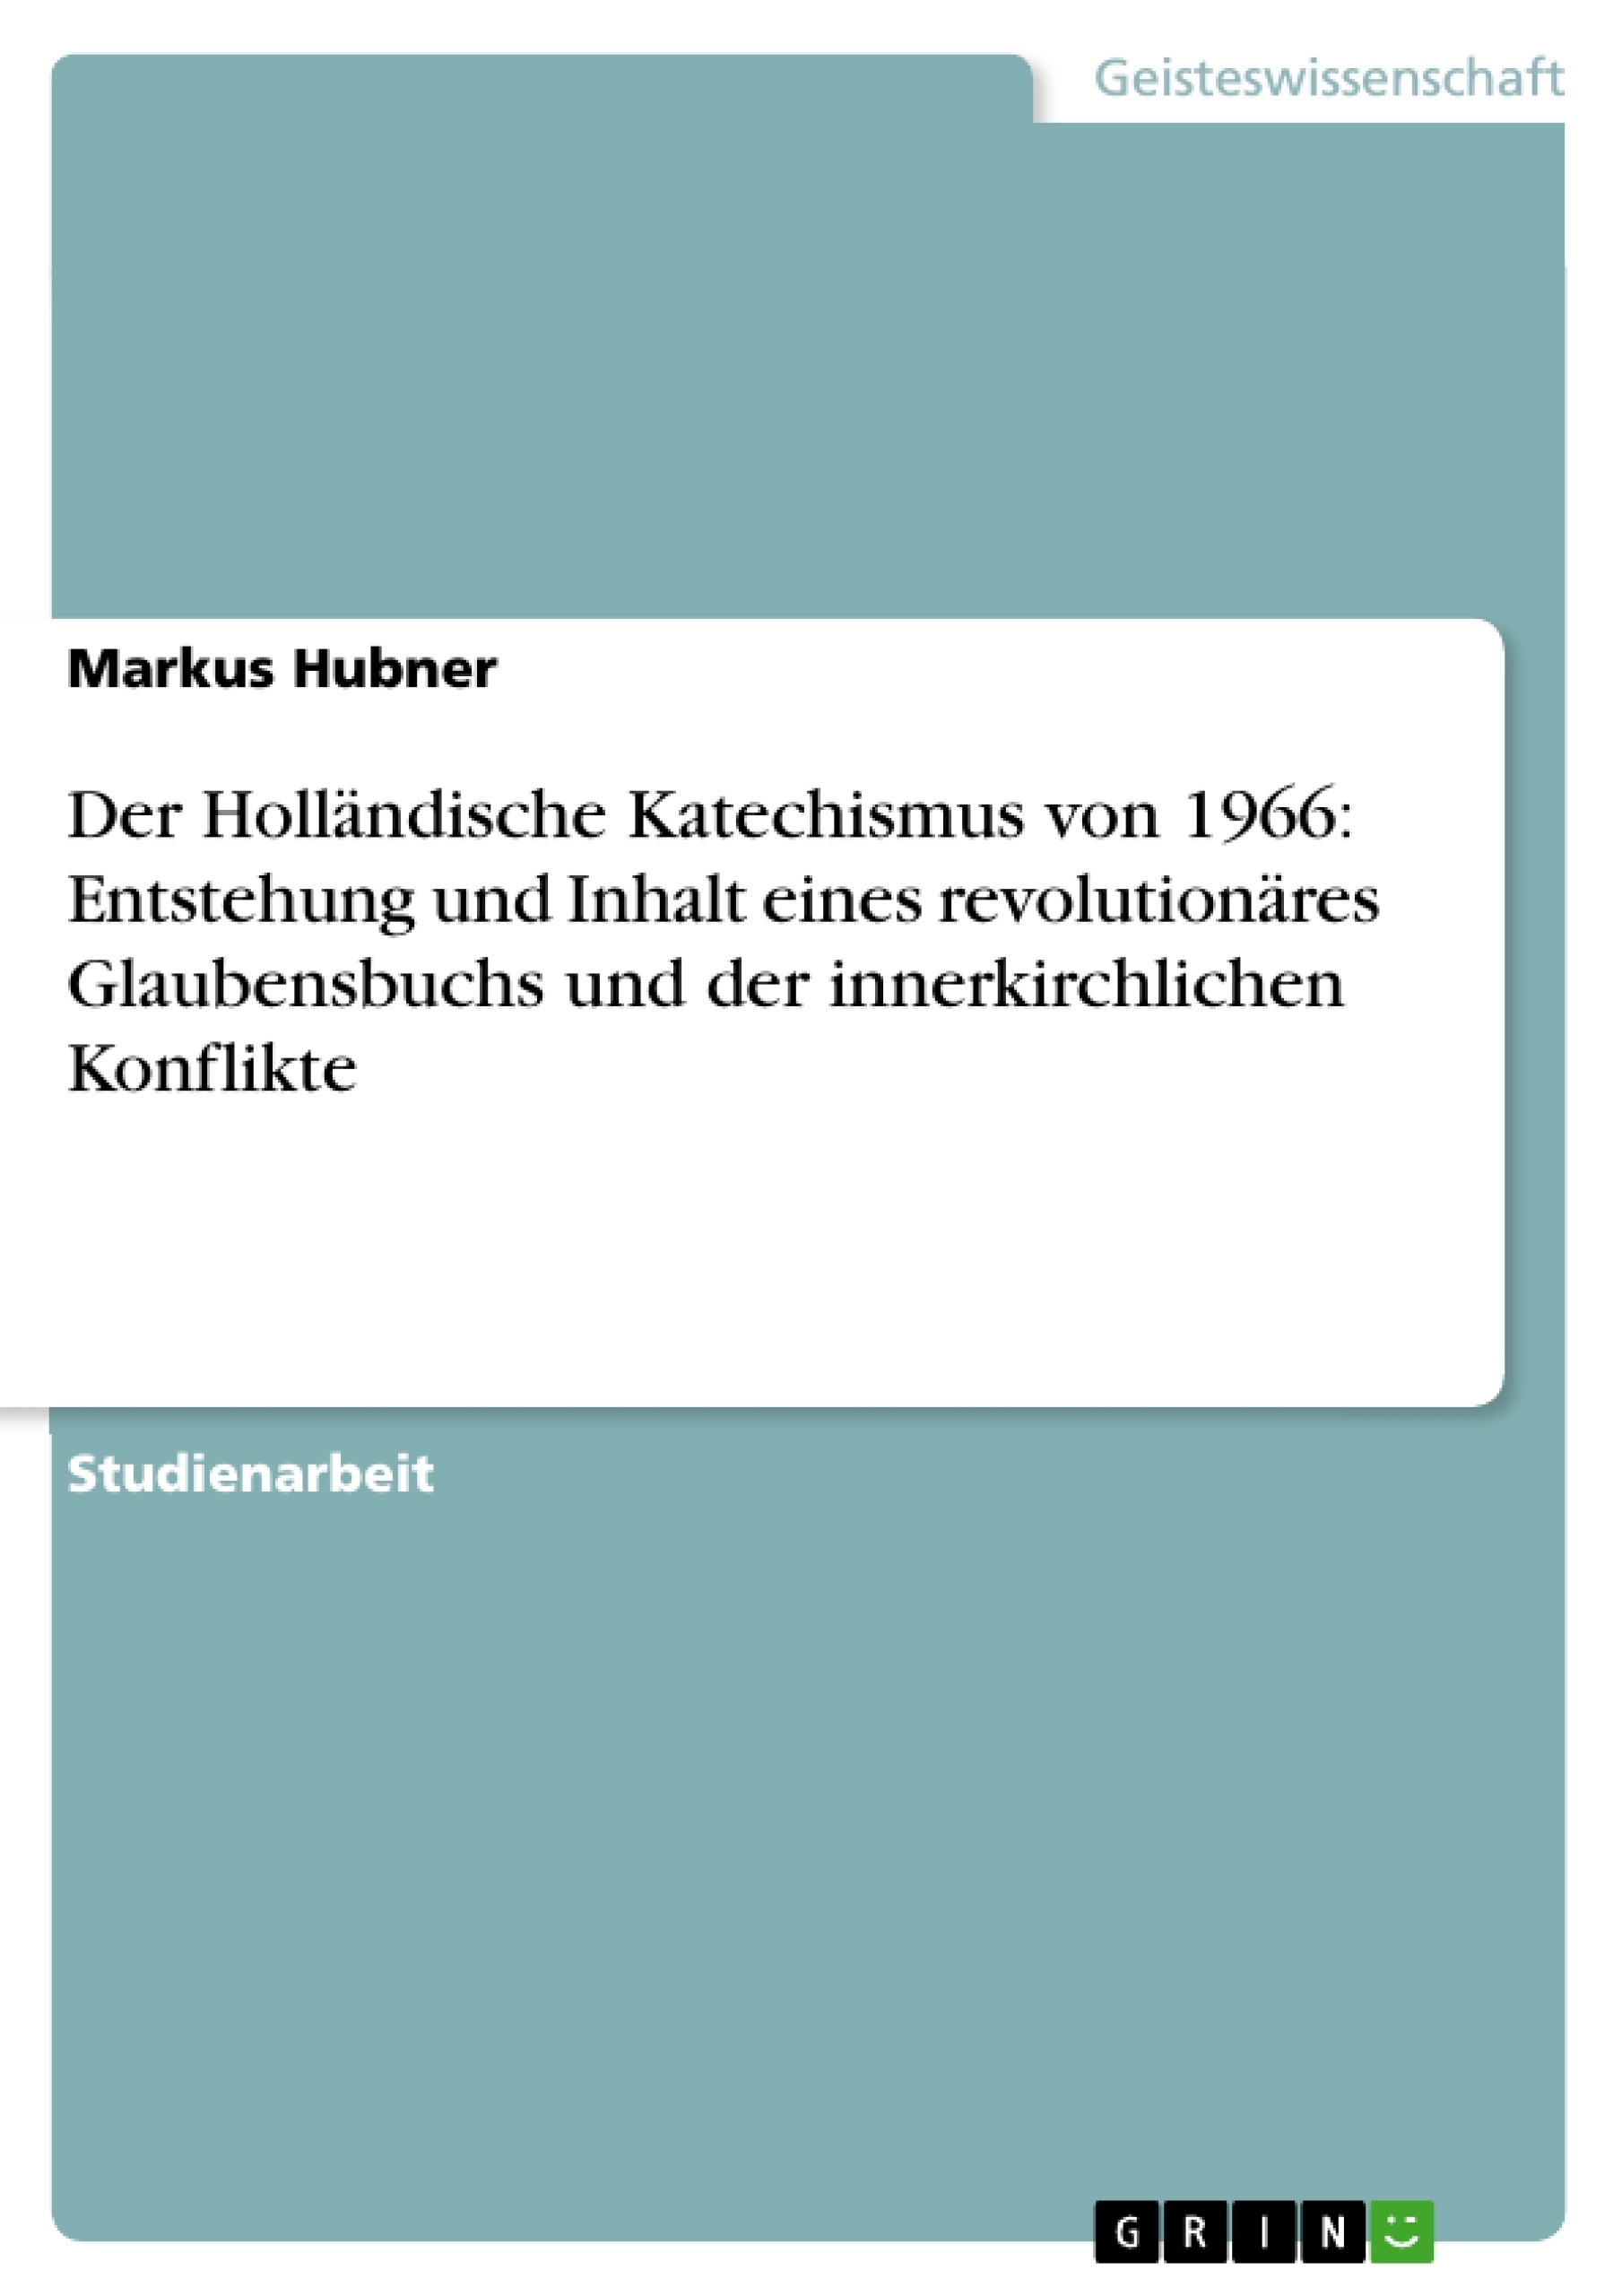 Titre: Der Holländische Katechismus von 1966: Entstehung und Inhalt eines revolutionäres Glaubensbuchs und der innerkirchlichen Konflikte